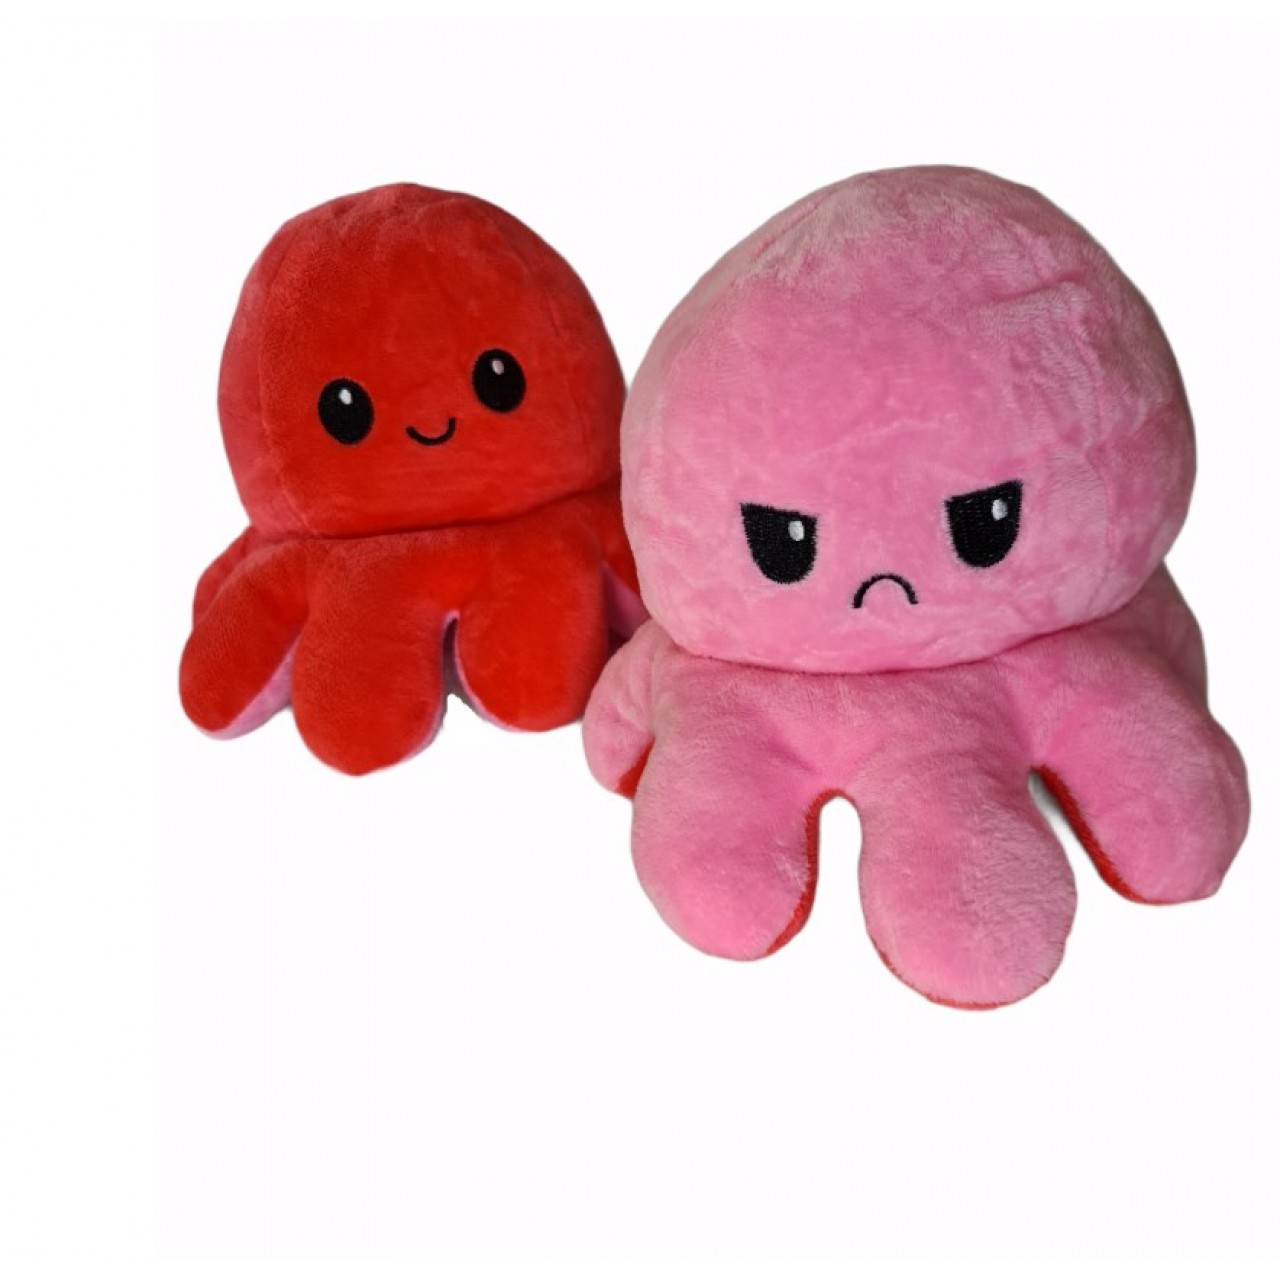 Χταπόδι διπλής όψης λούτρινο emotional reversible octopus plush 20 εκ - 5331 - Ροζ σκούρο / Ροζ ανοιχτό